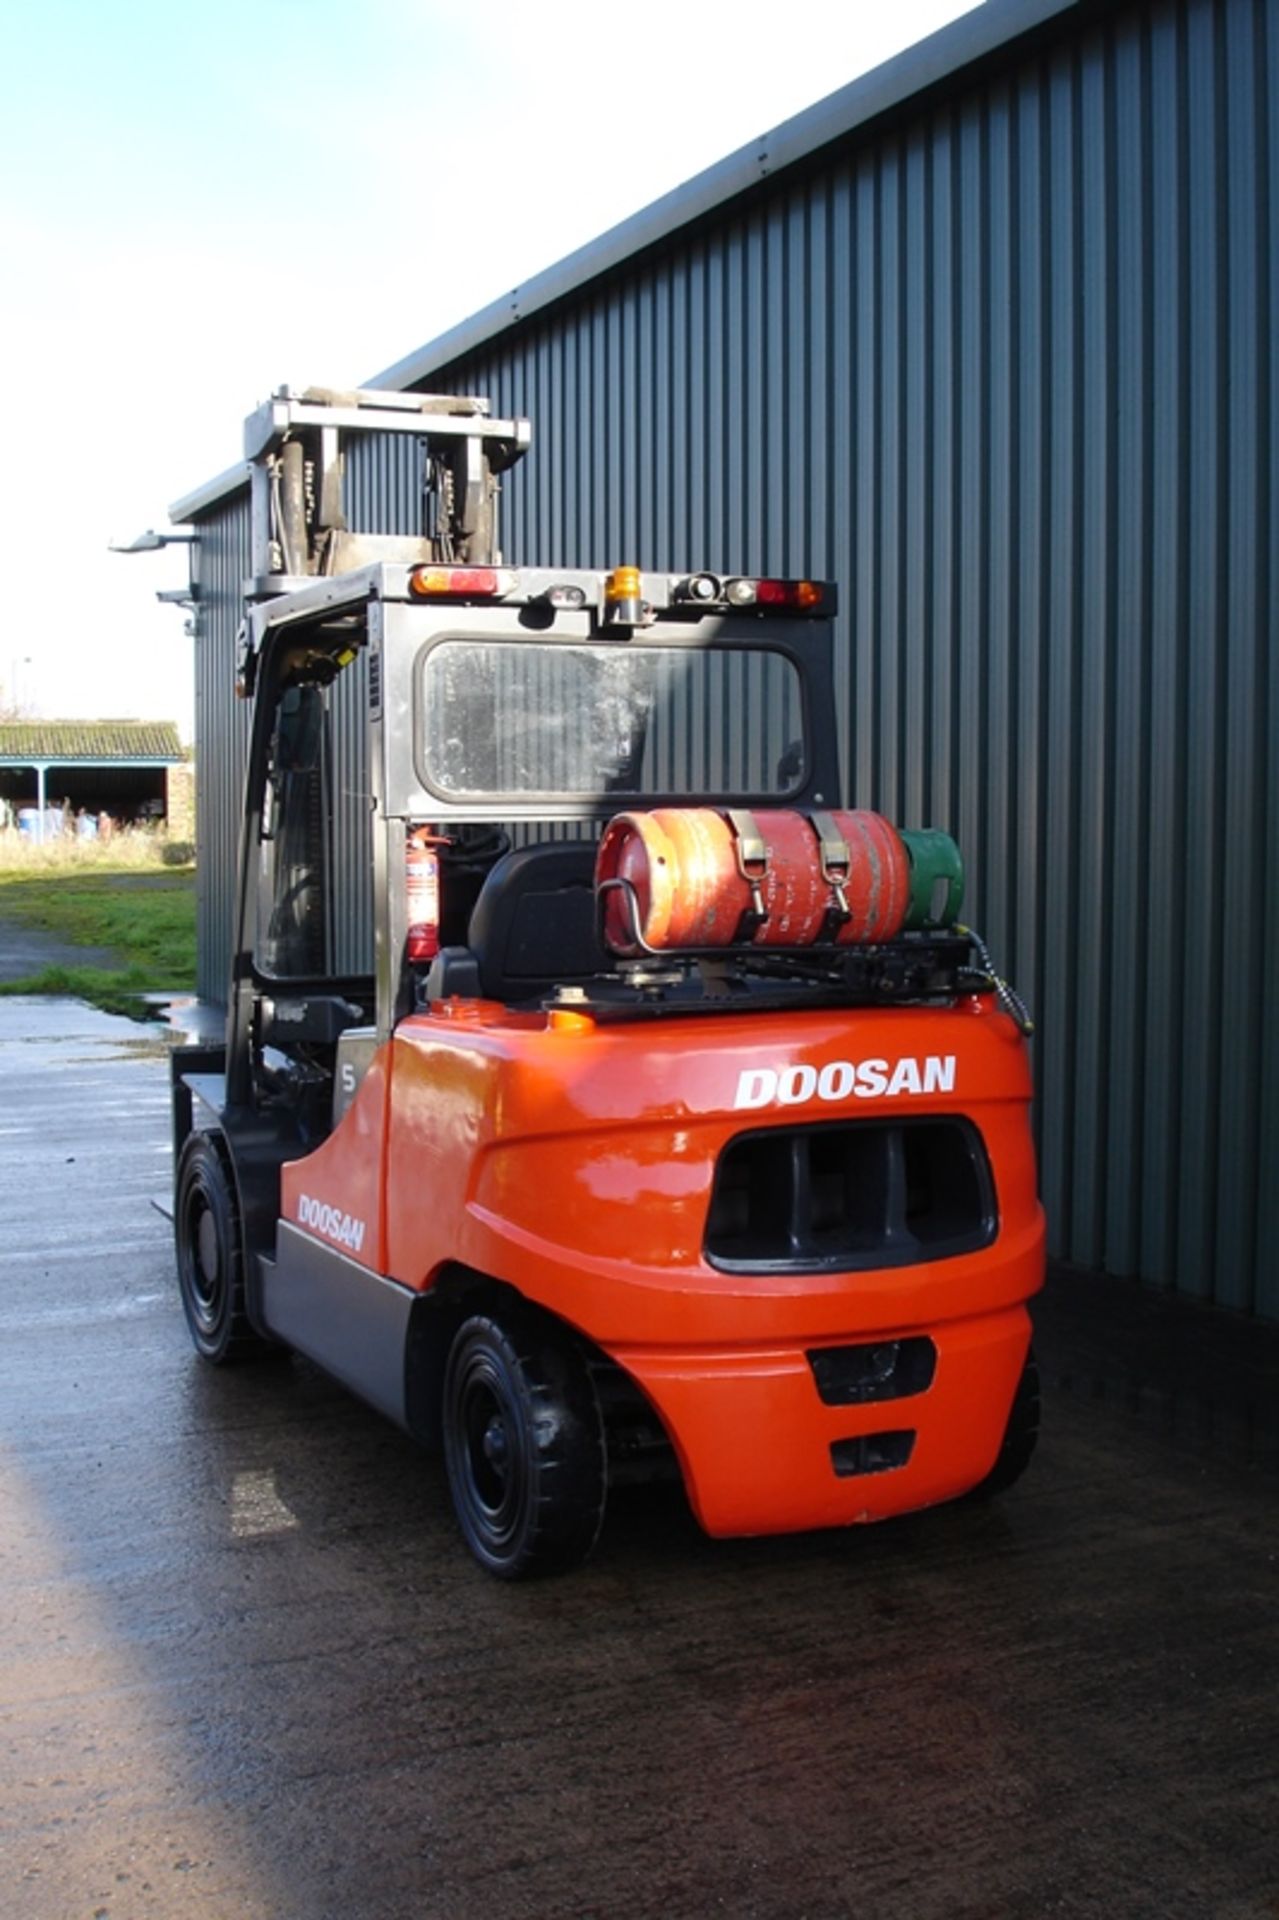 Doosan 5 Ton Forklift (2011) - Image 3 of 7